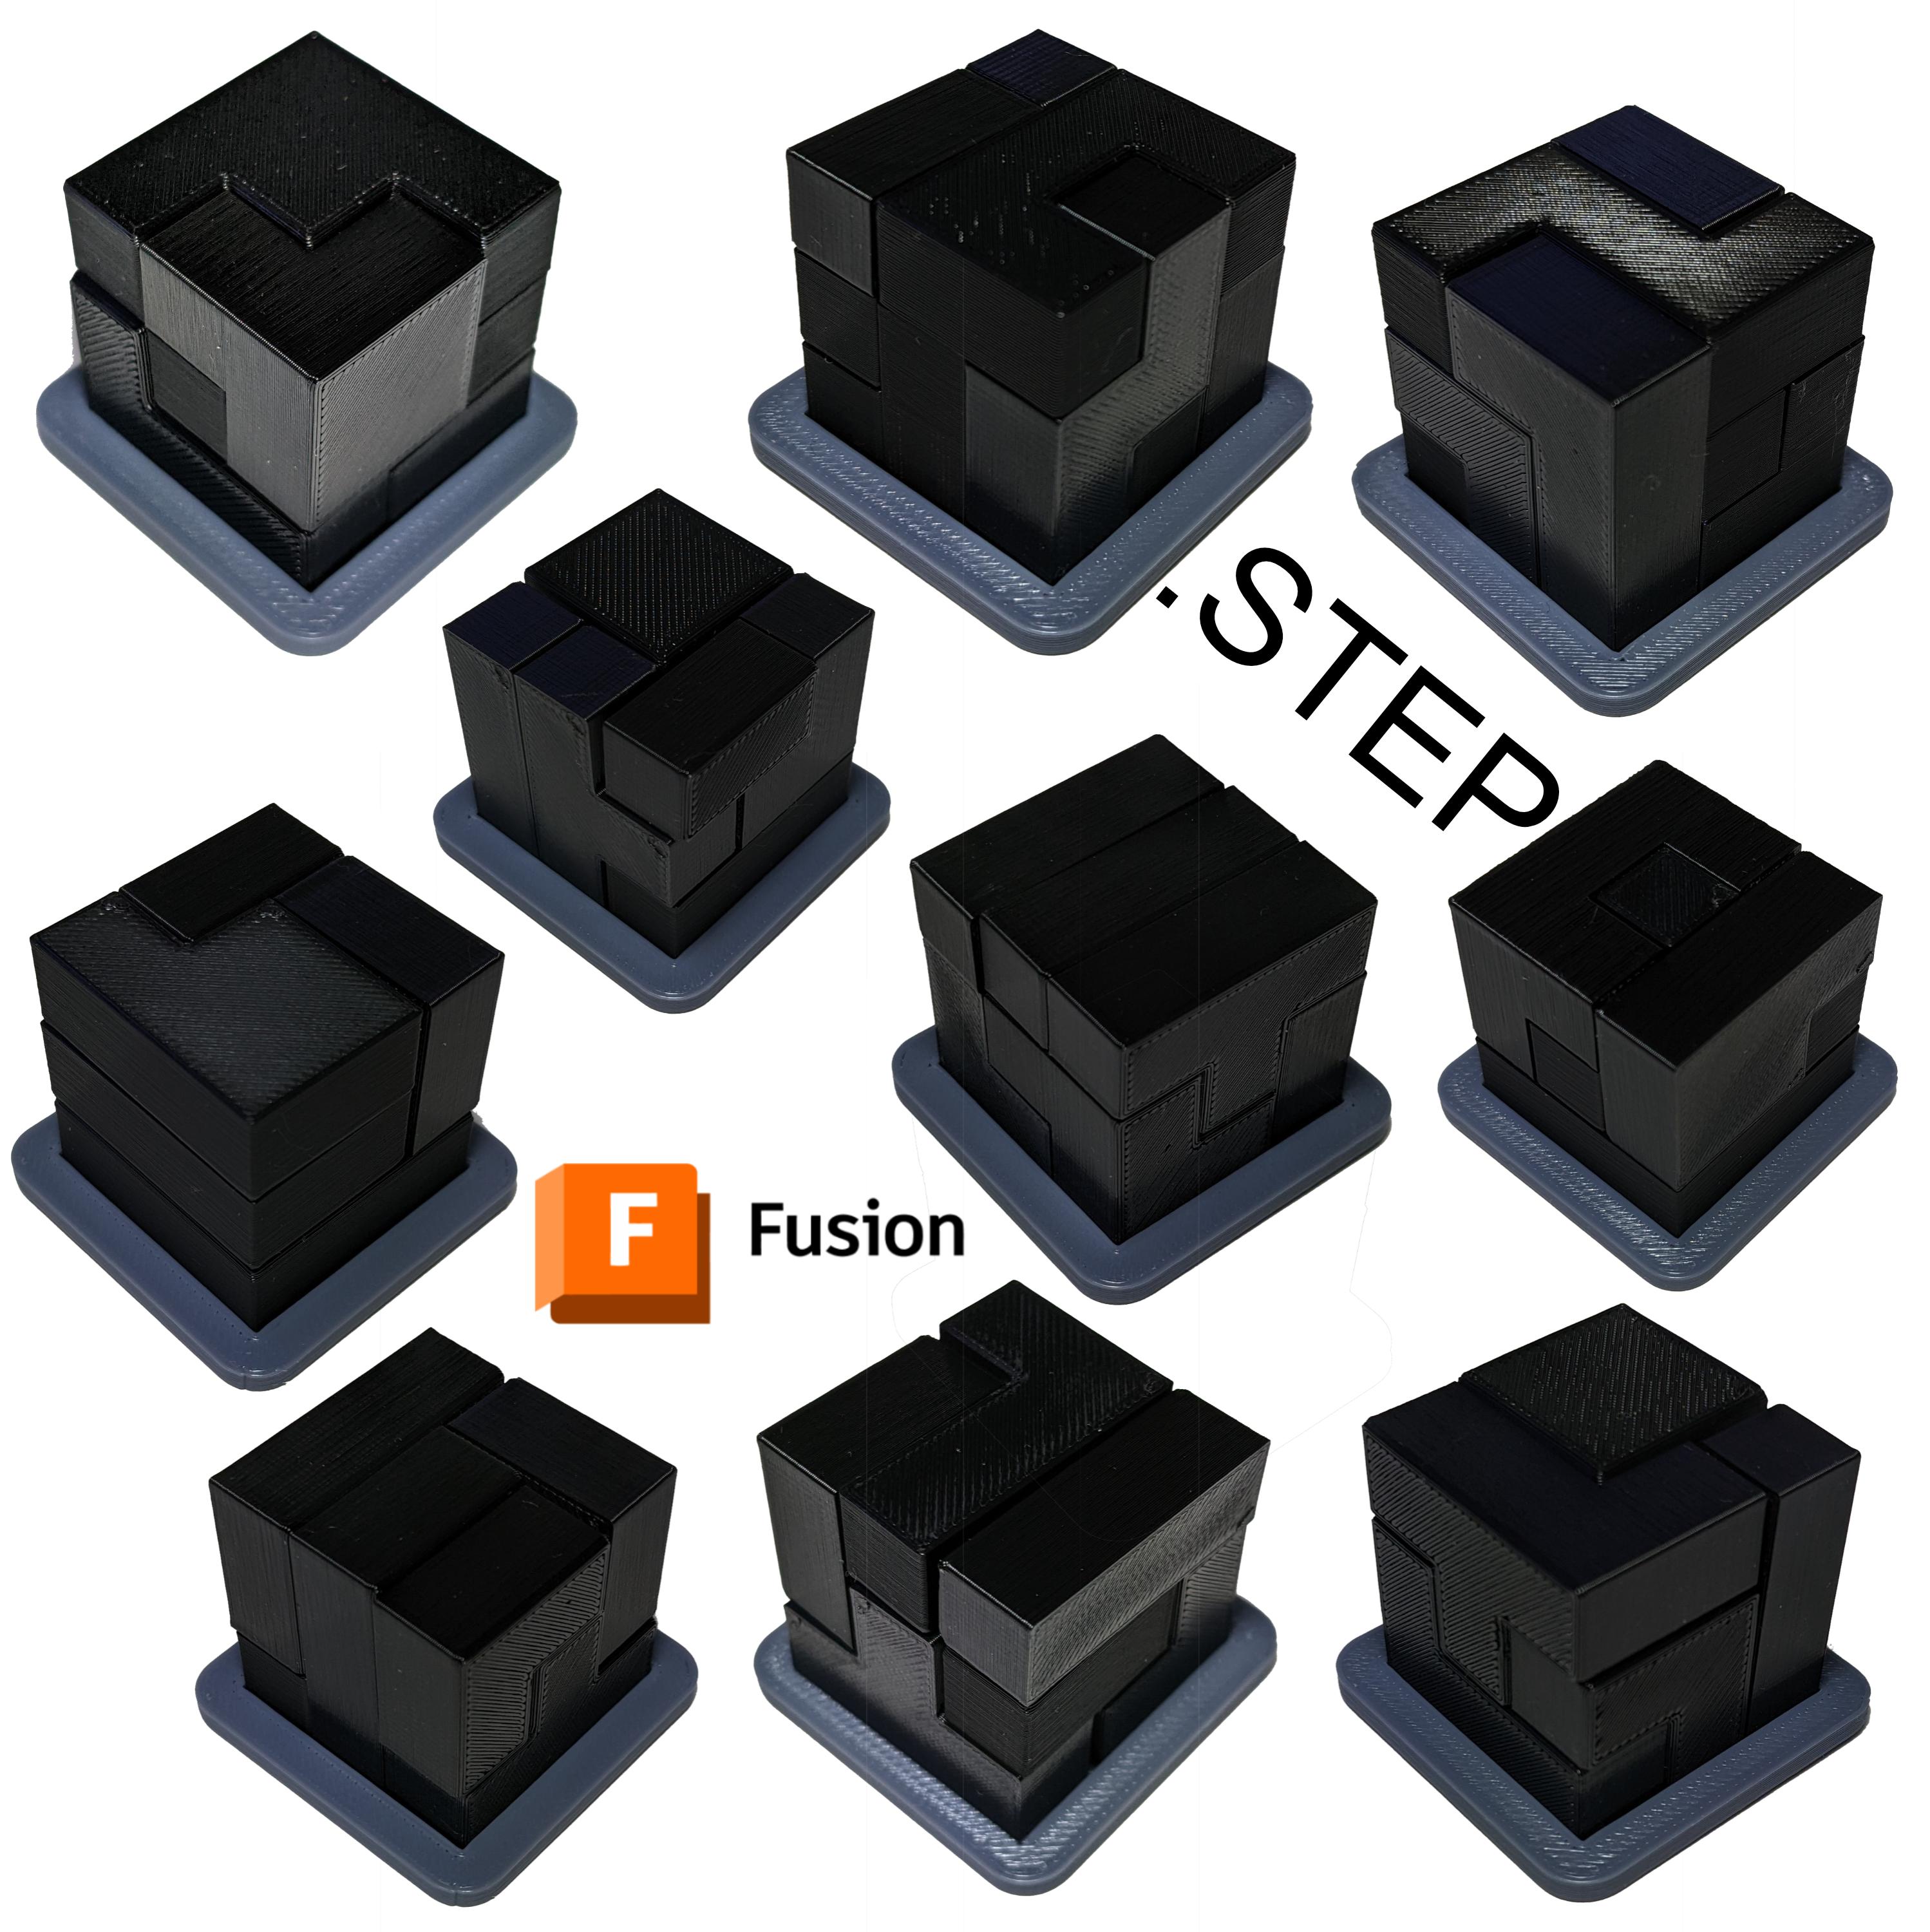 Puzzle cubes 3x3 3d model